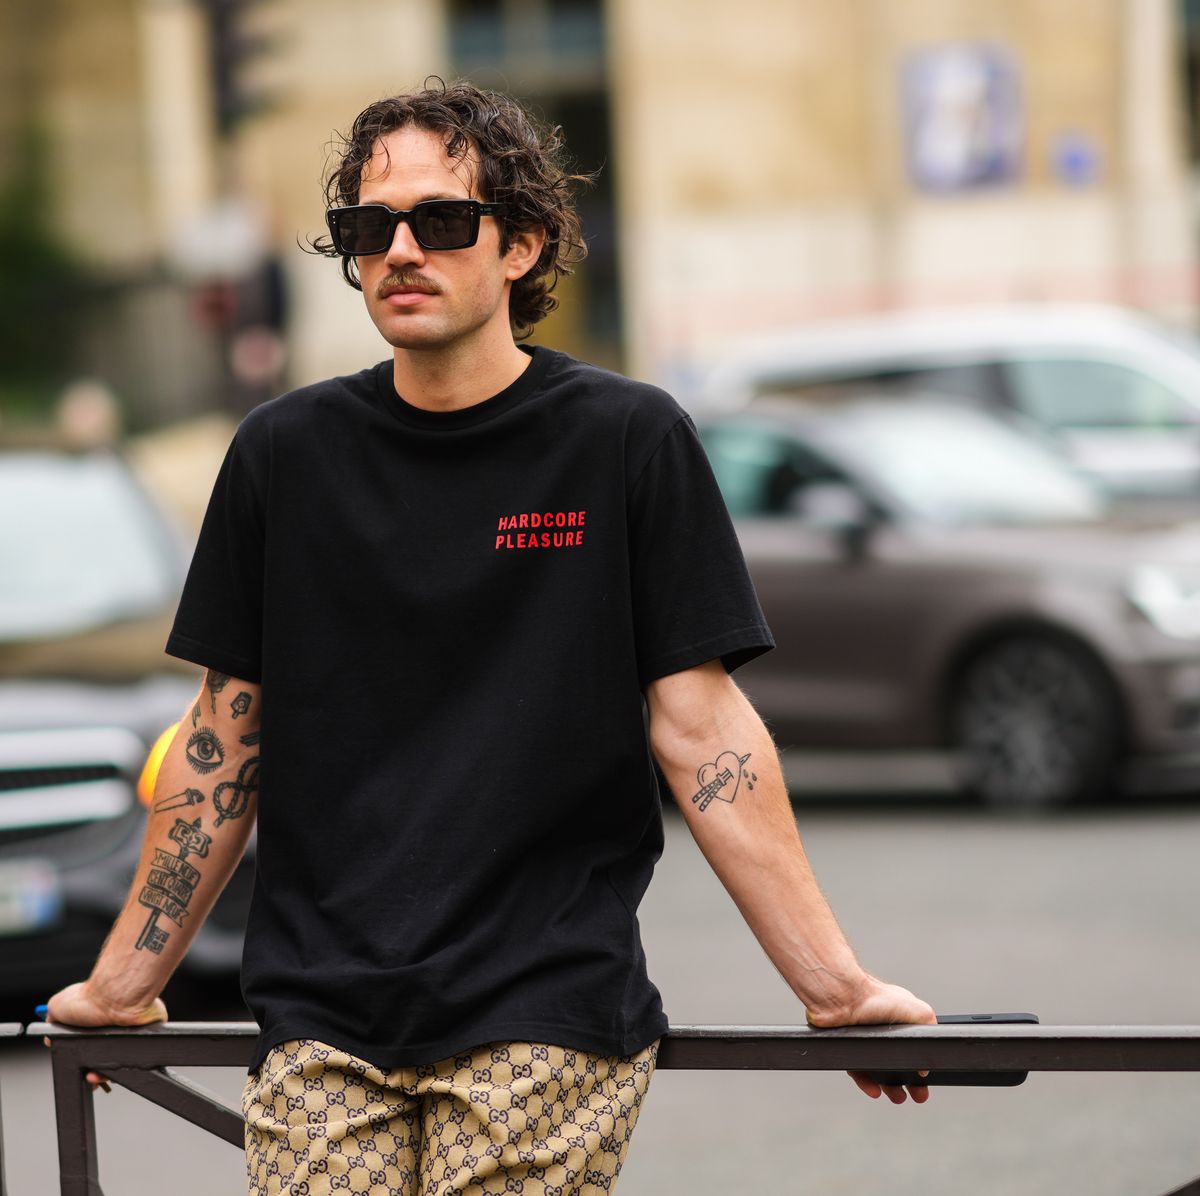 Las mejores ofertas en Camisetas sin mangas para mujer Louis Vuitton